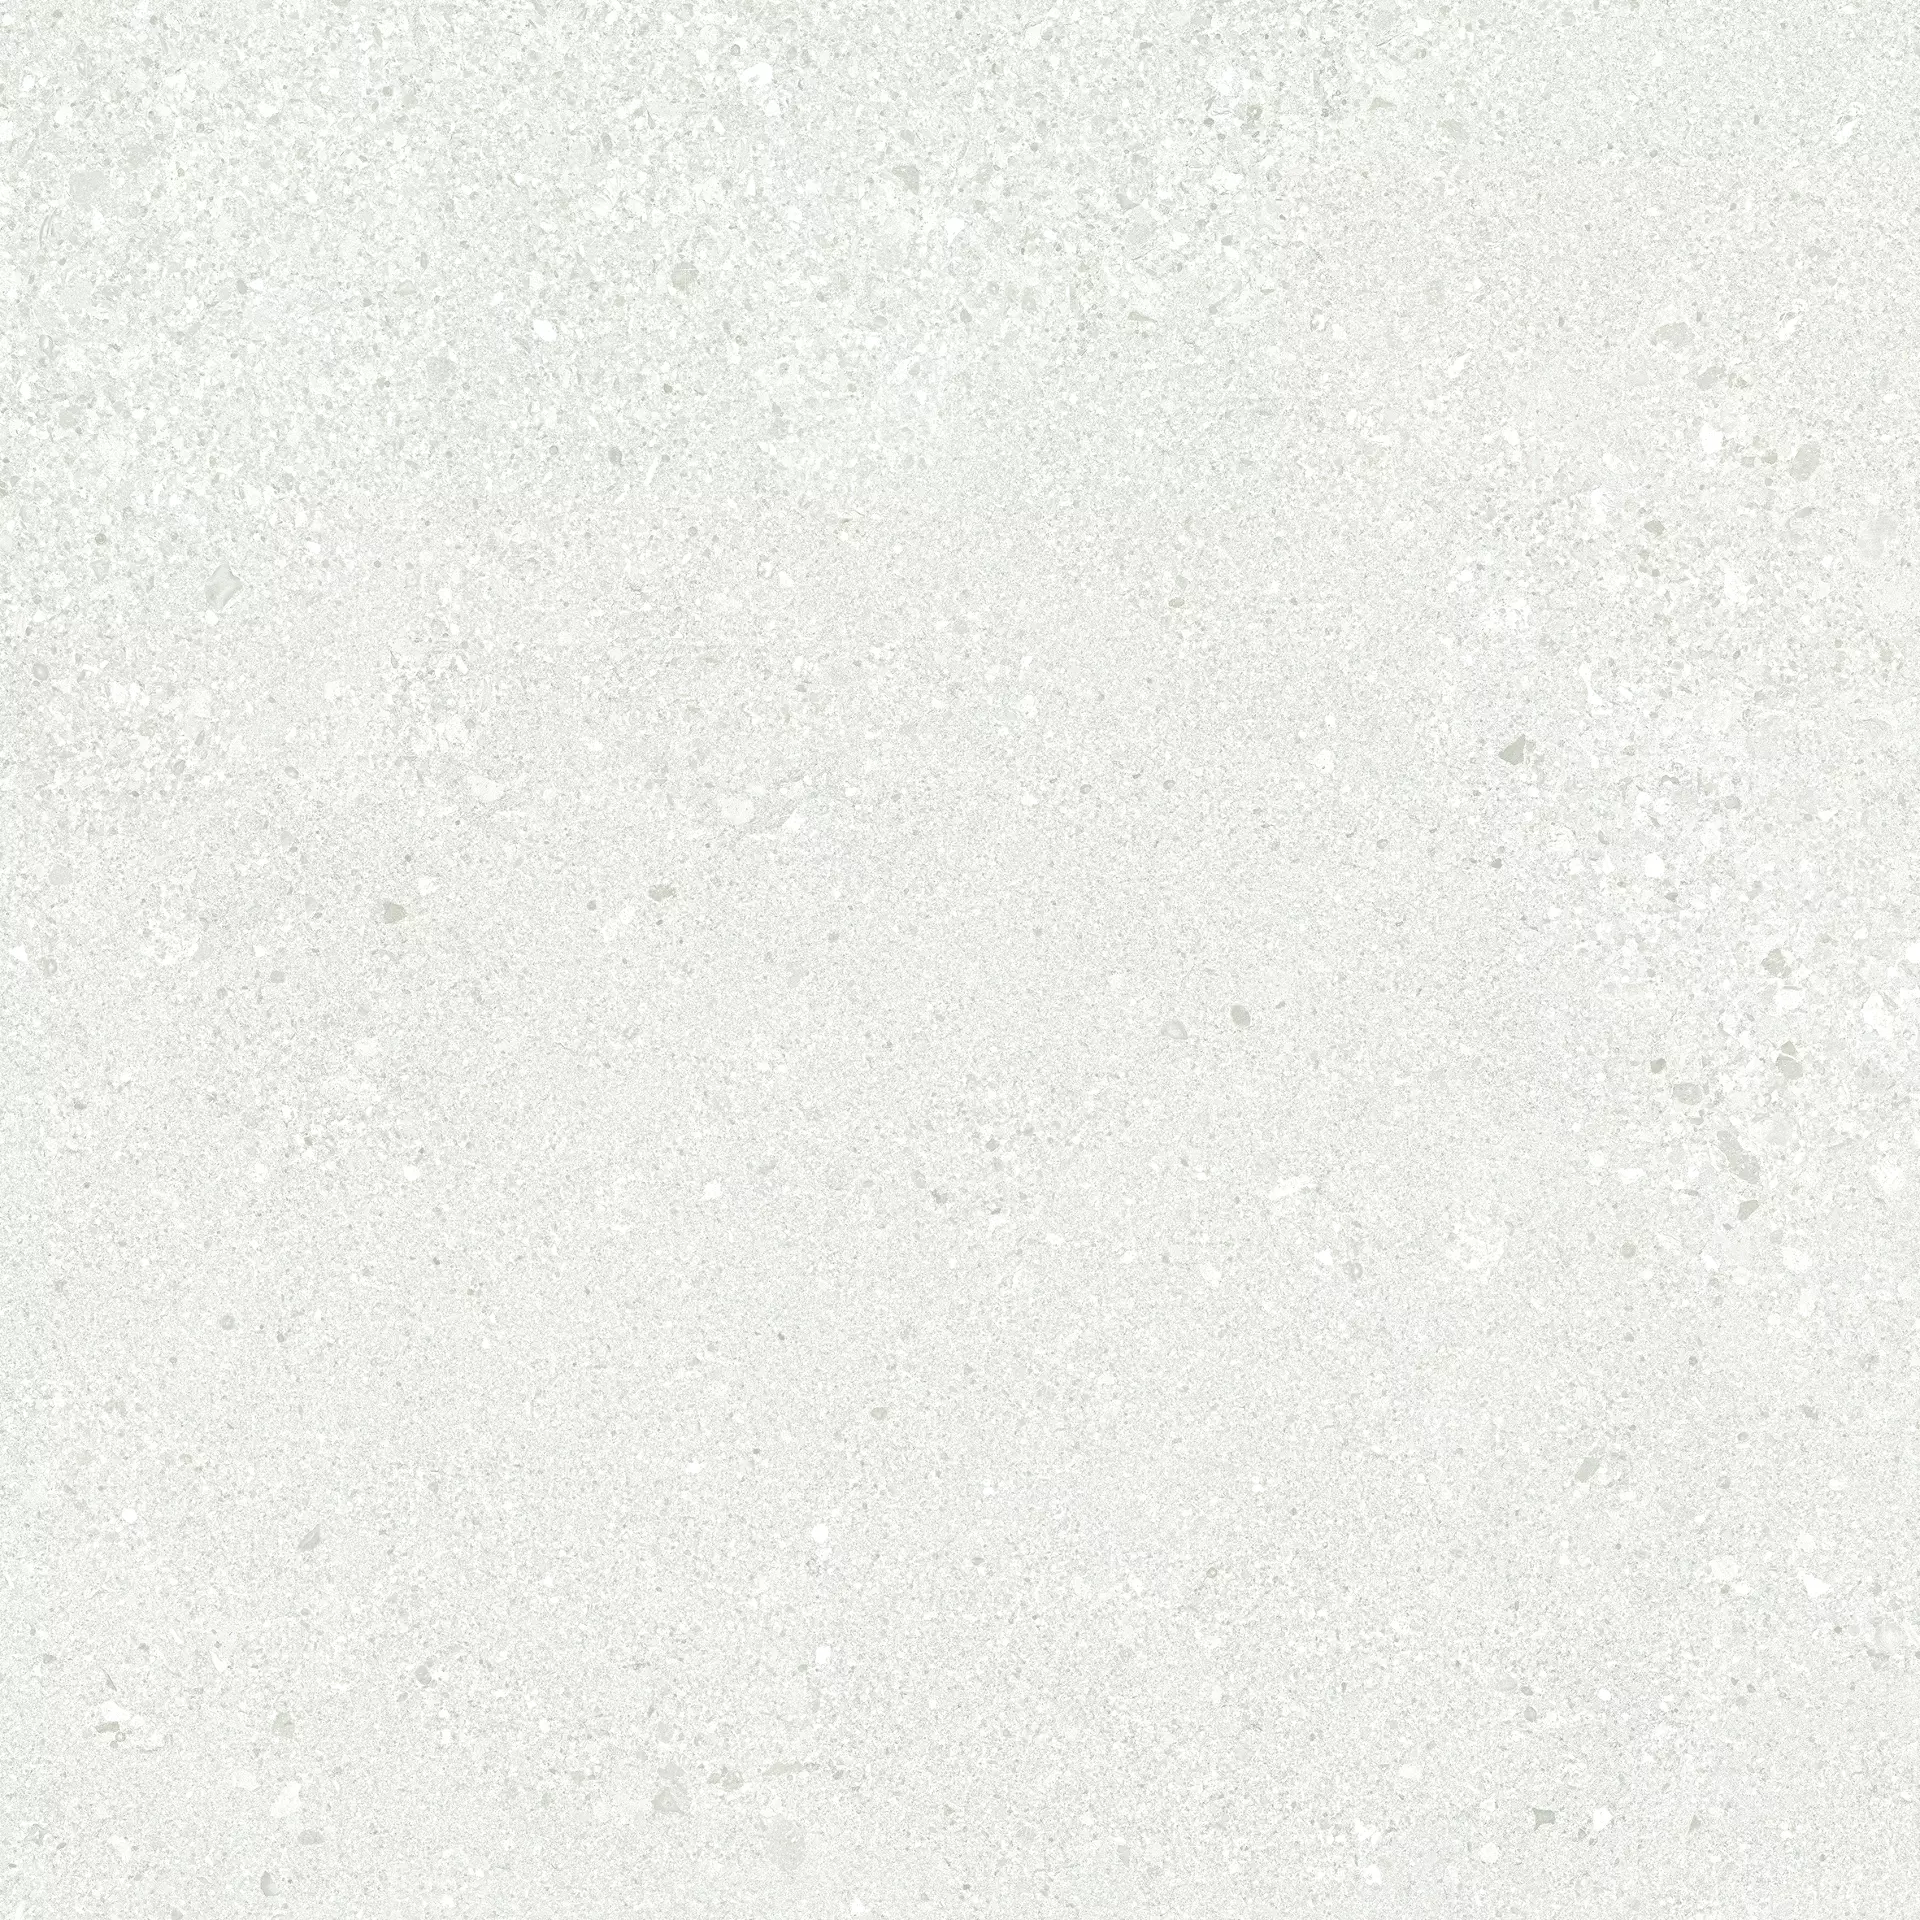 Ergon Grain Stone Rough Grain White Naturale E0CE 60x60cm rectified 9,5mm